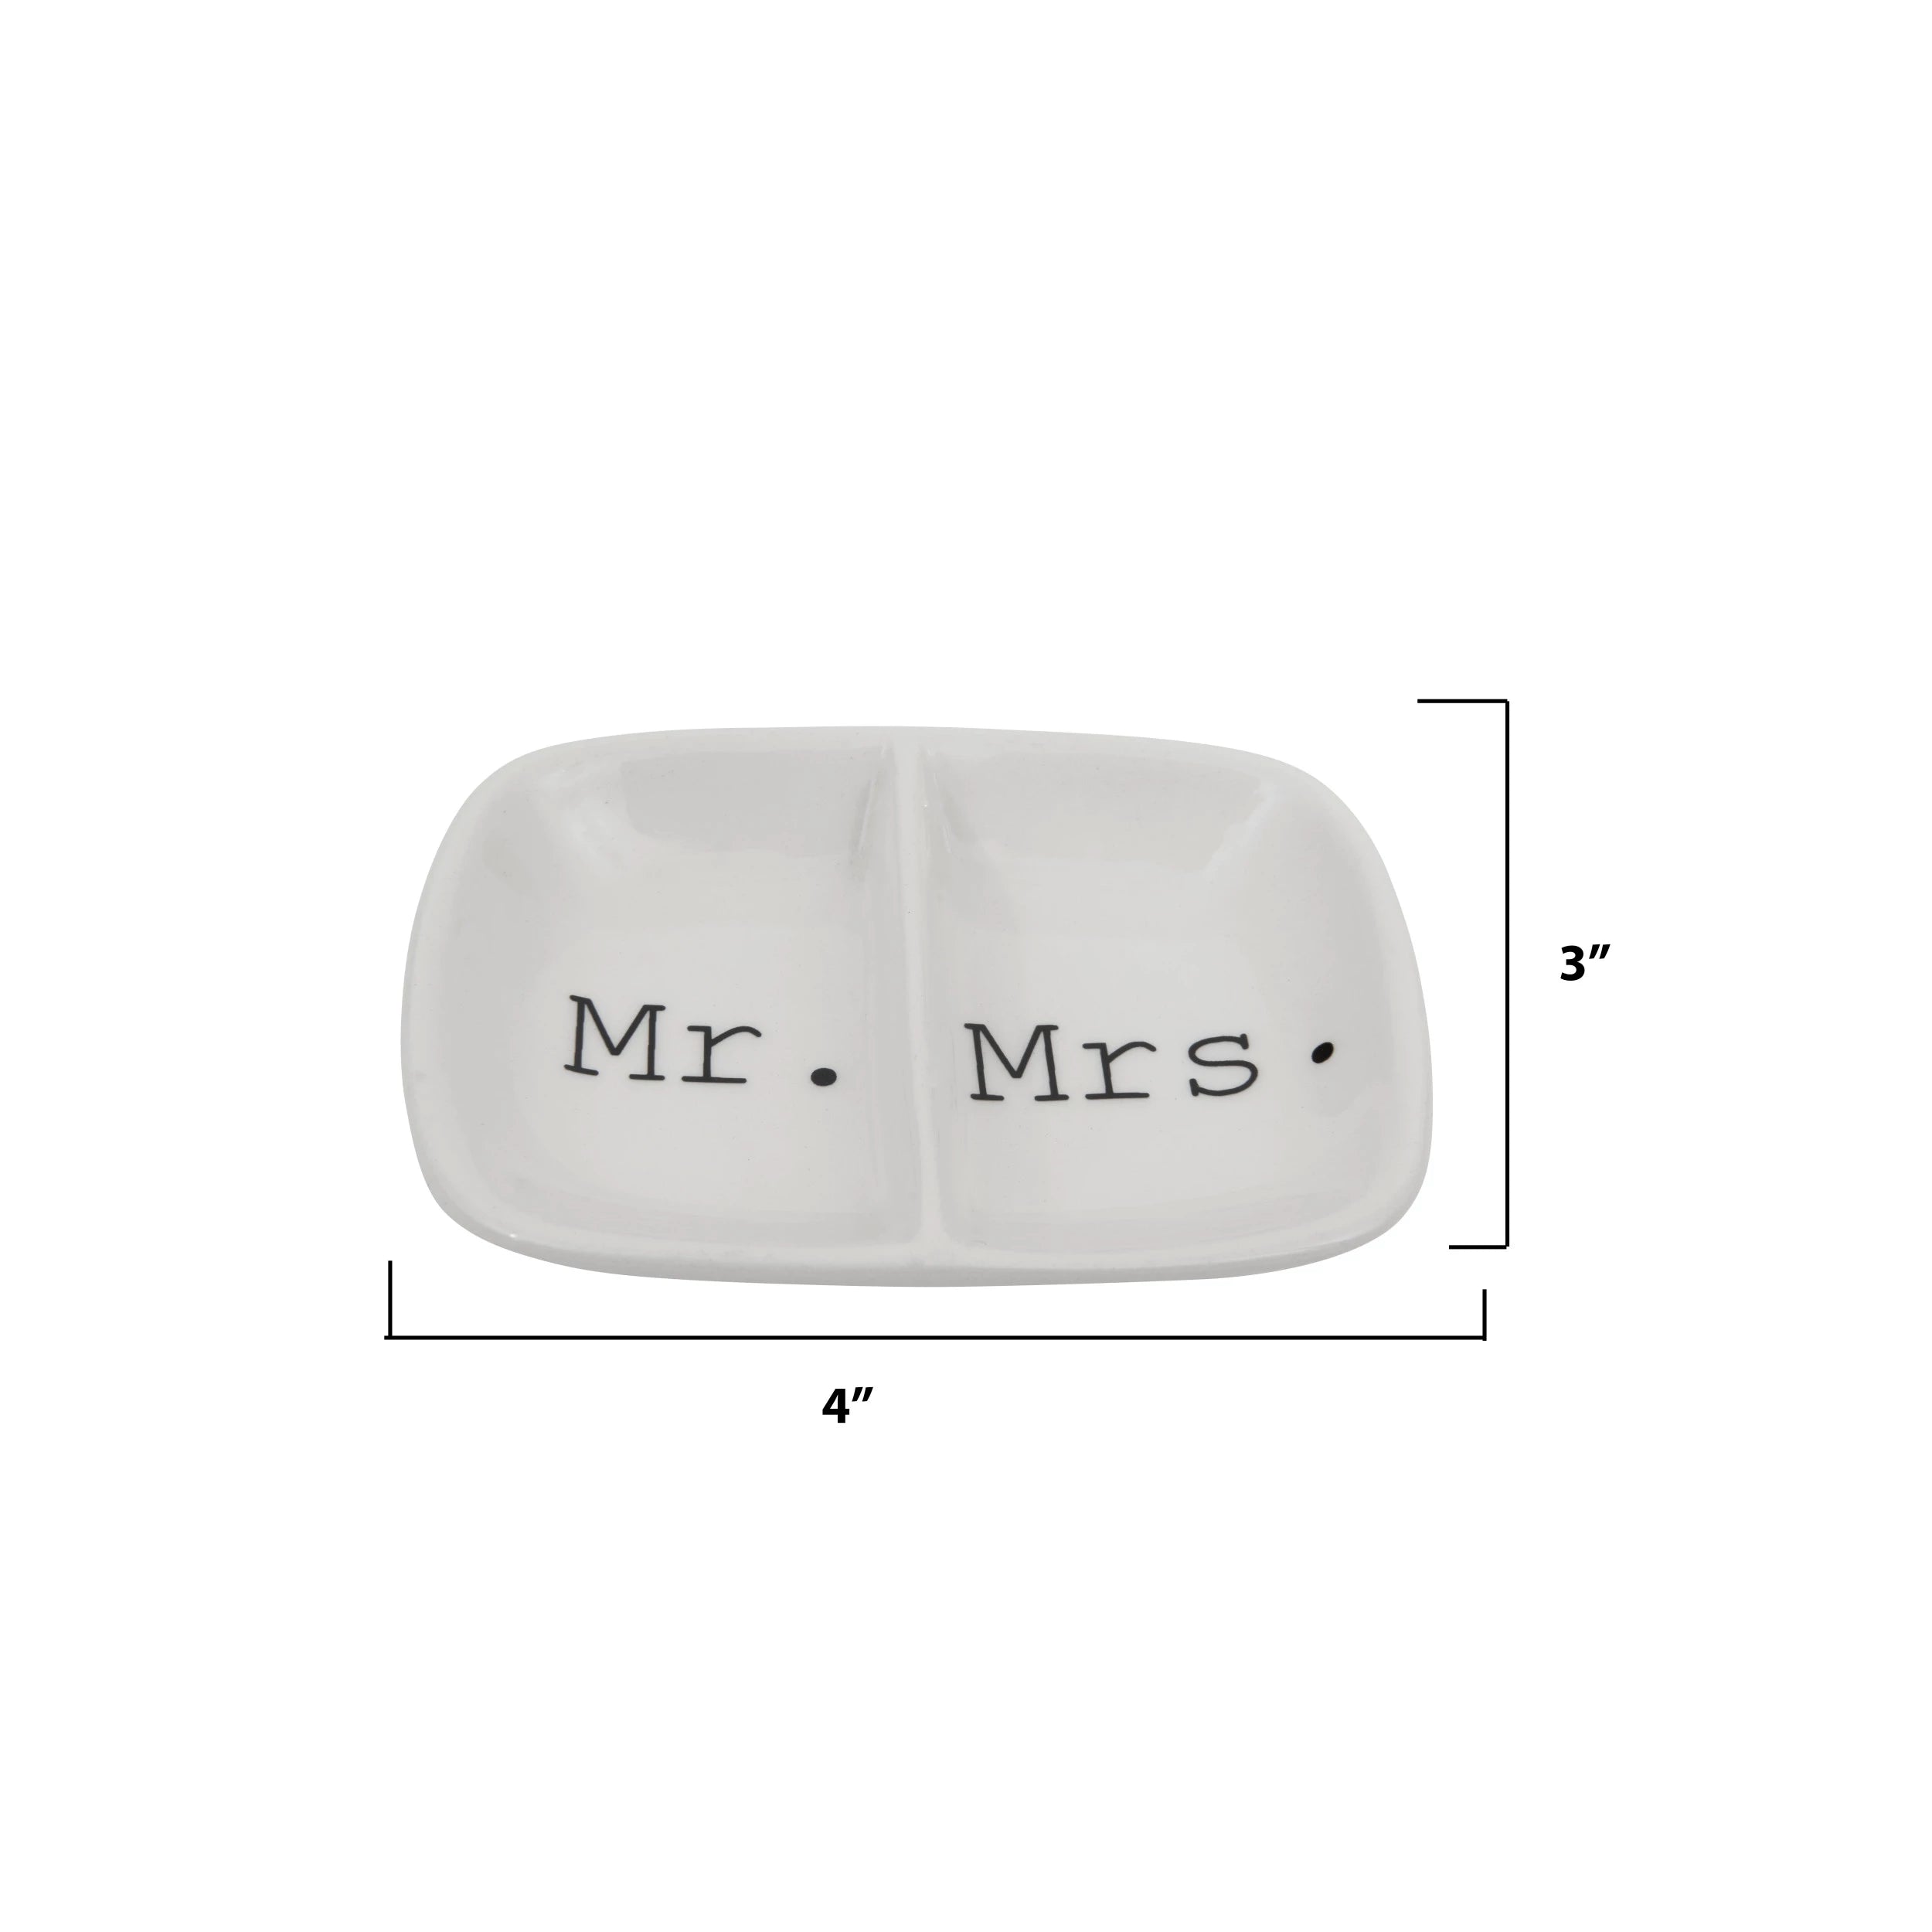 Mr. / Mrs. Ceramic Dish